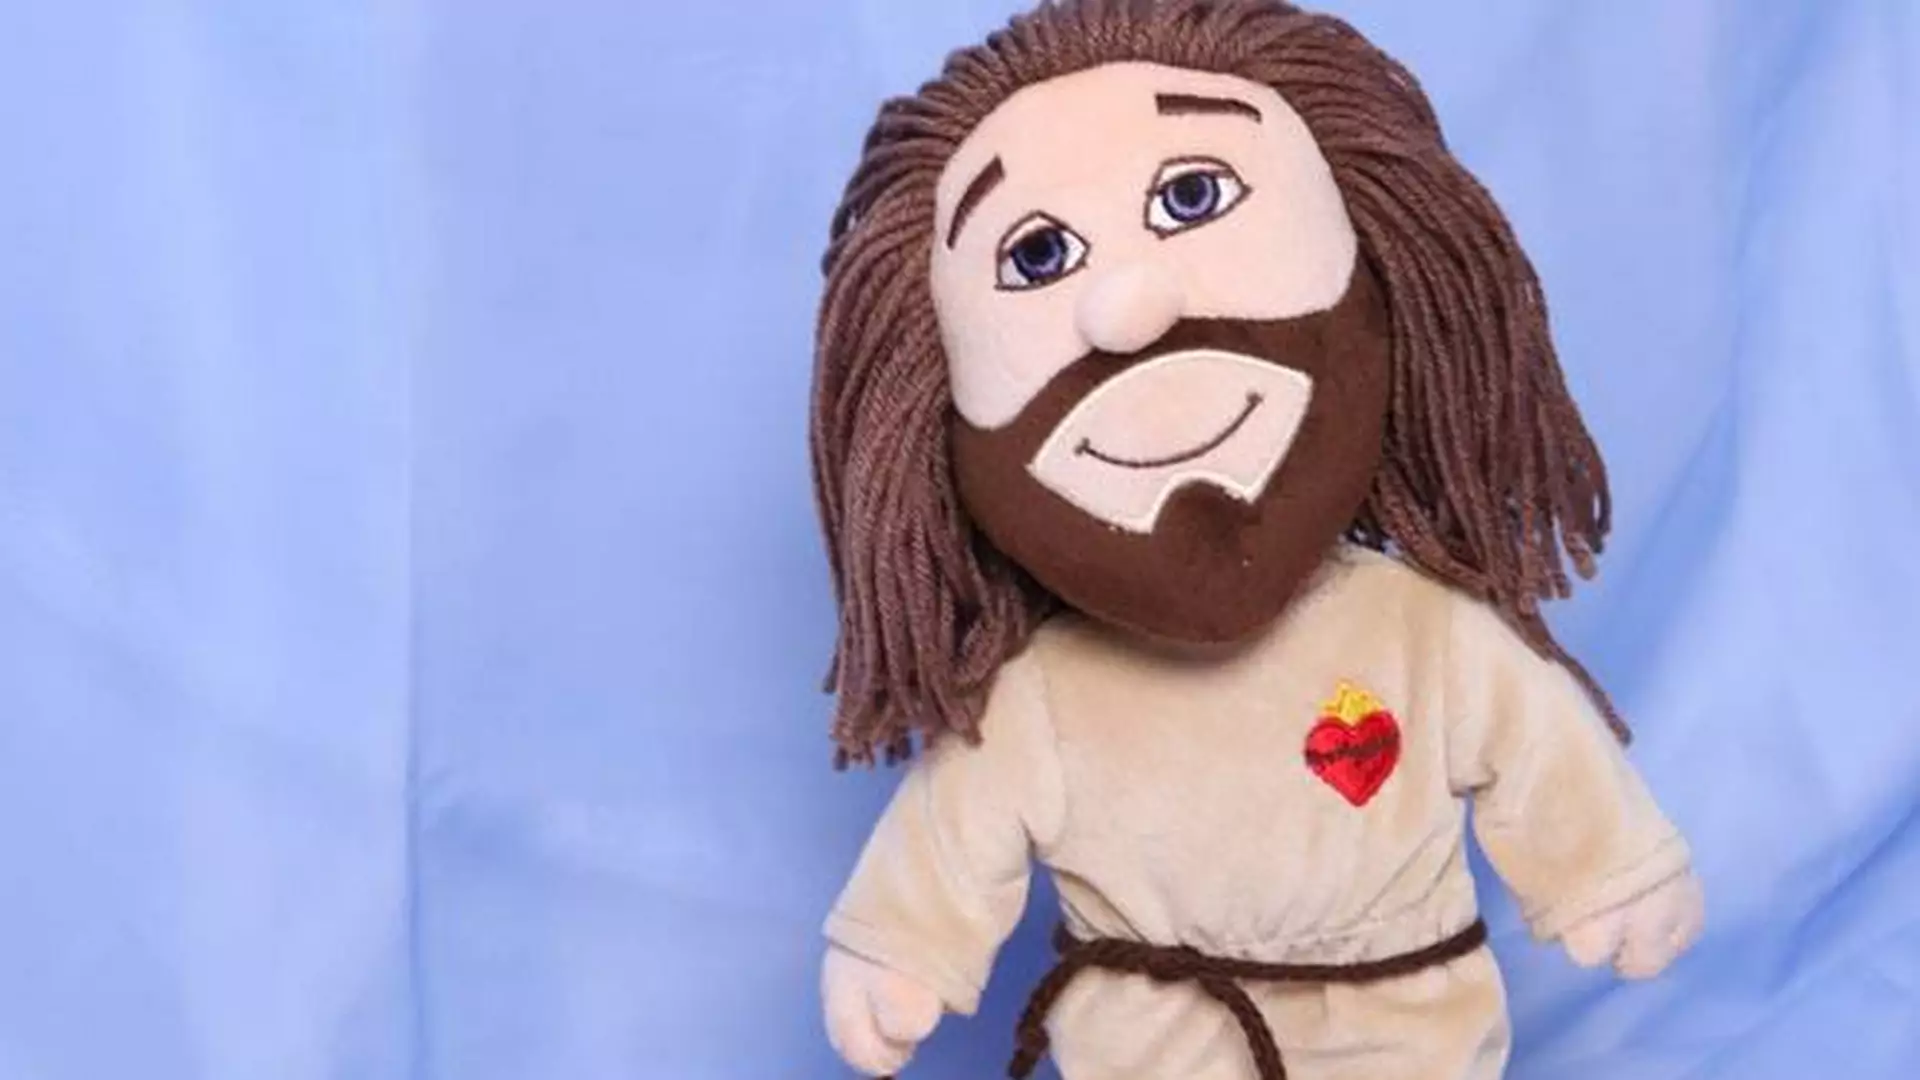 Pluszowy Jezus: nowość wśród maskotek dla dzieci szokuje i dzieli